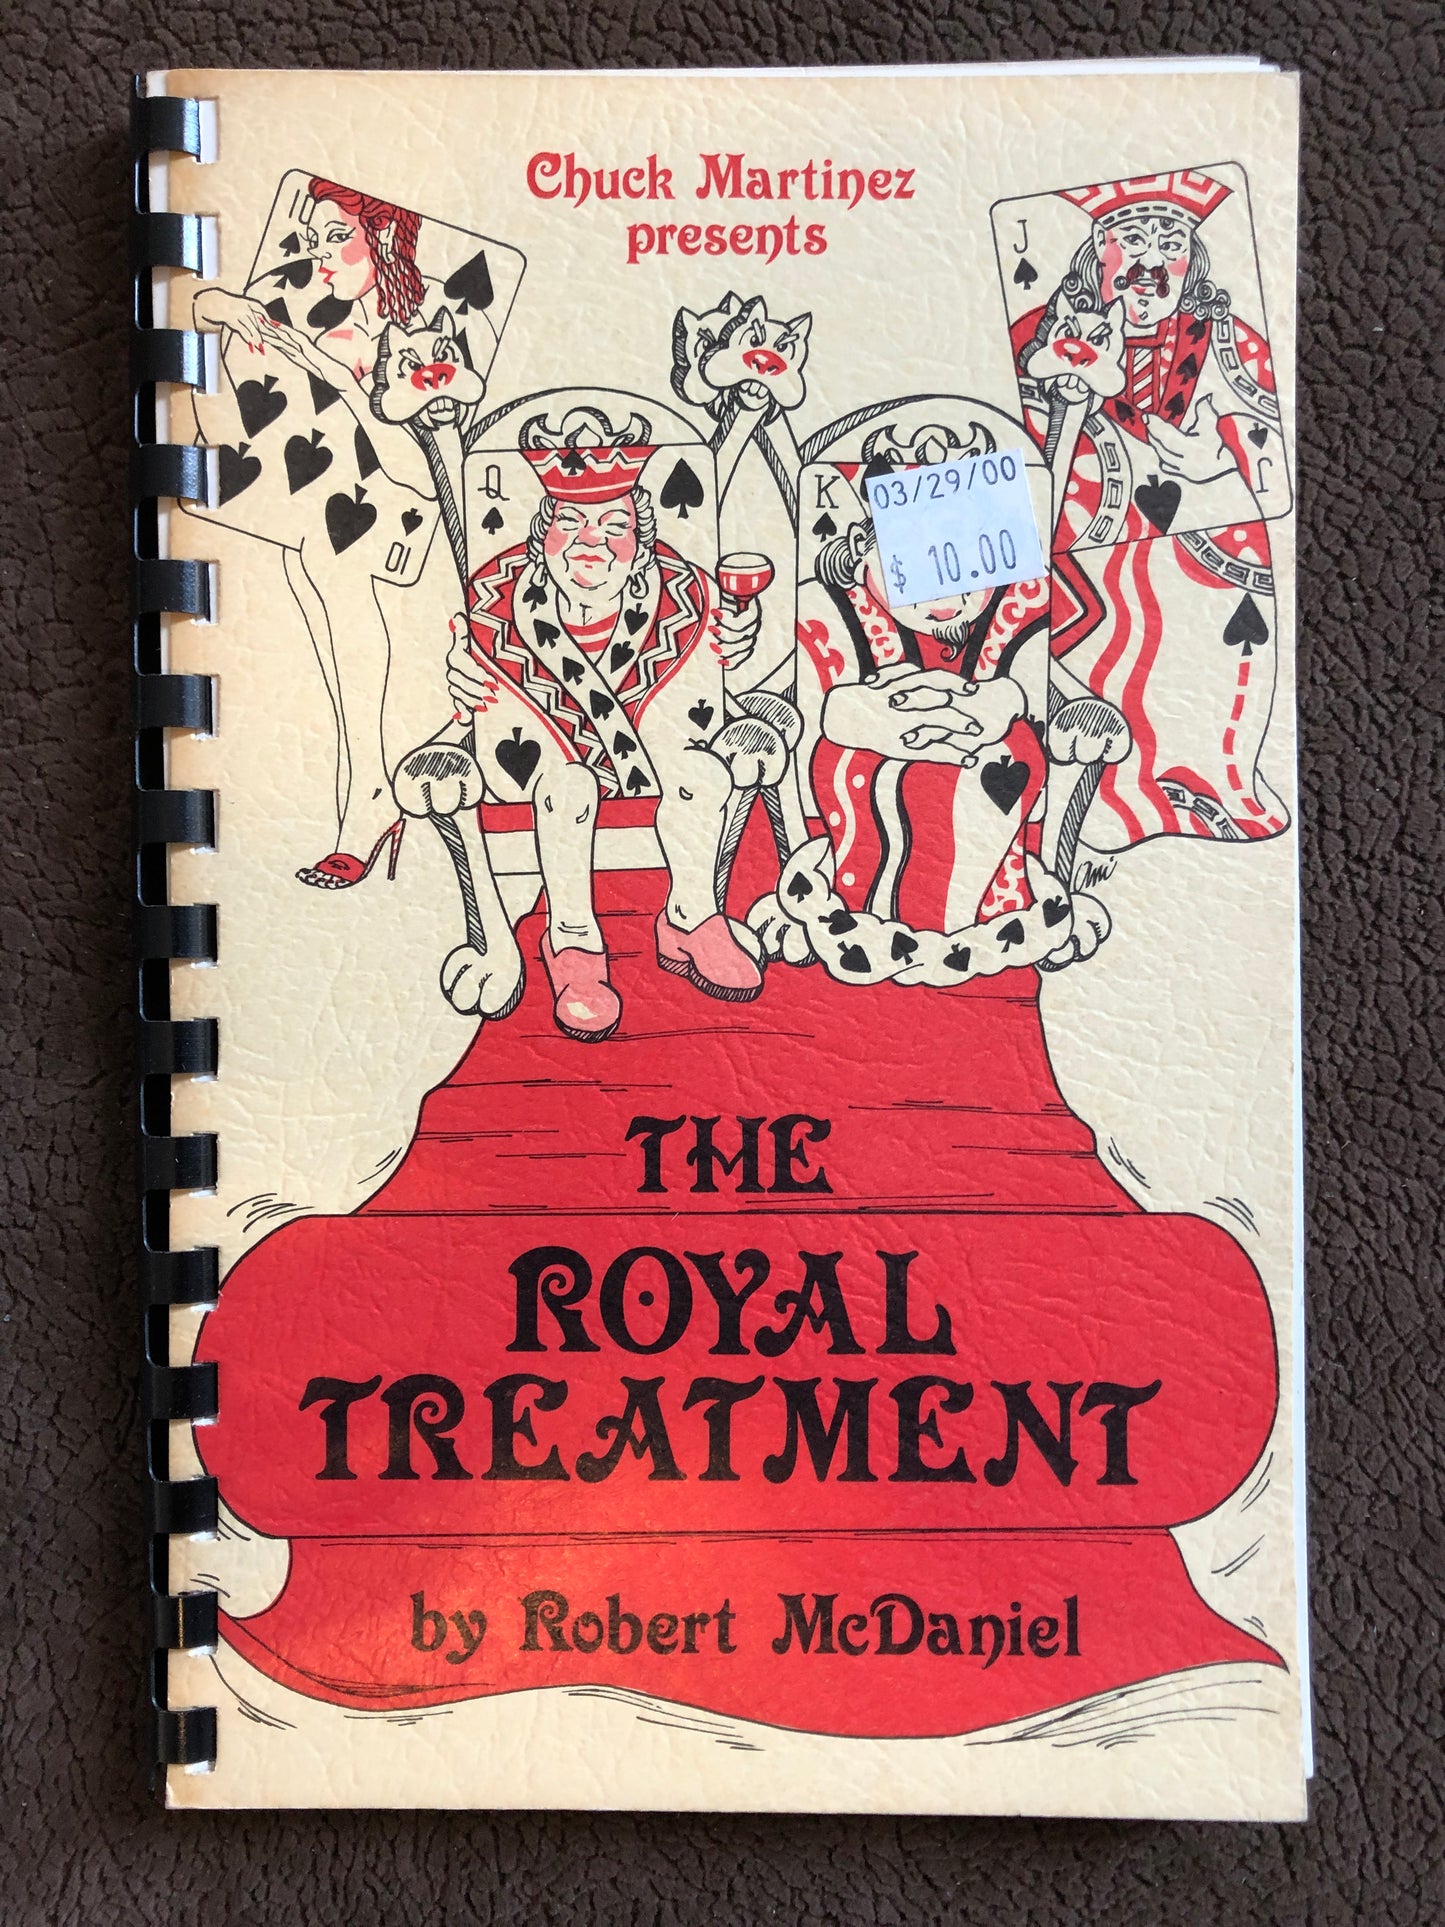 The Royal Treatment - Robert McDaniel